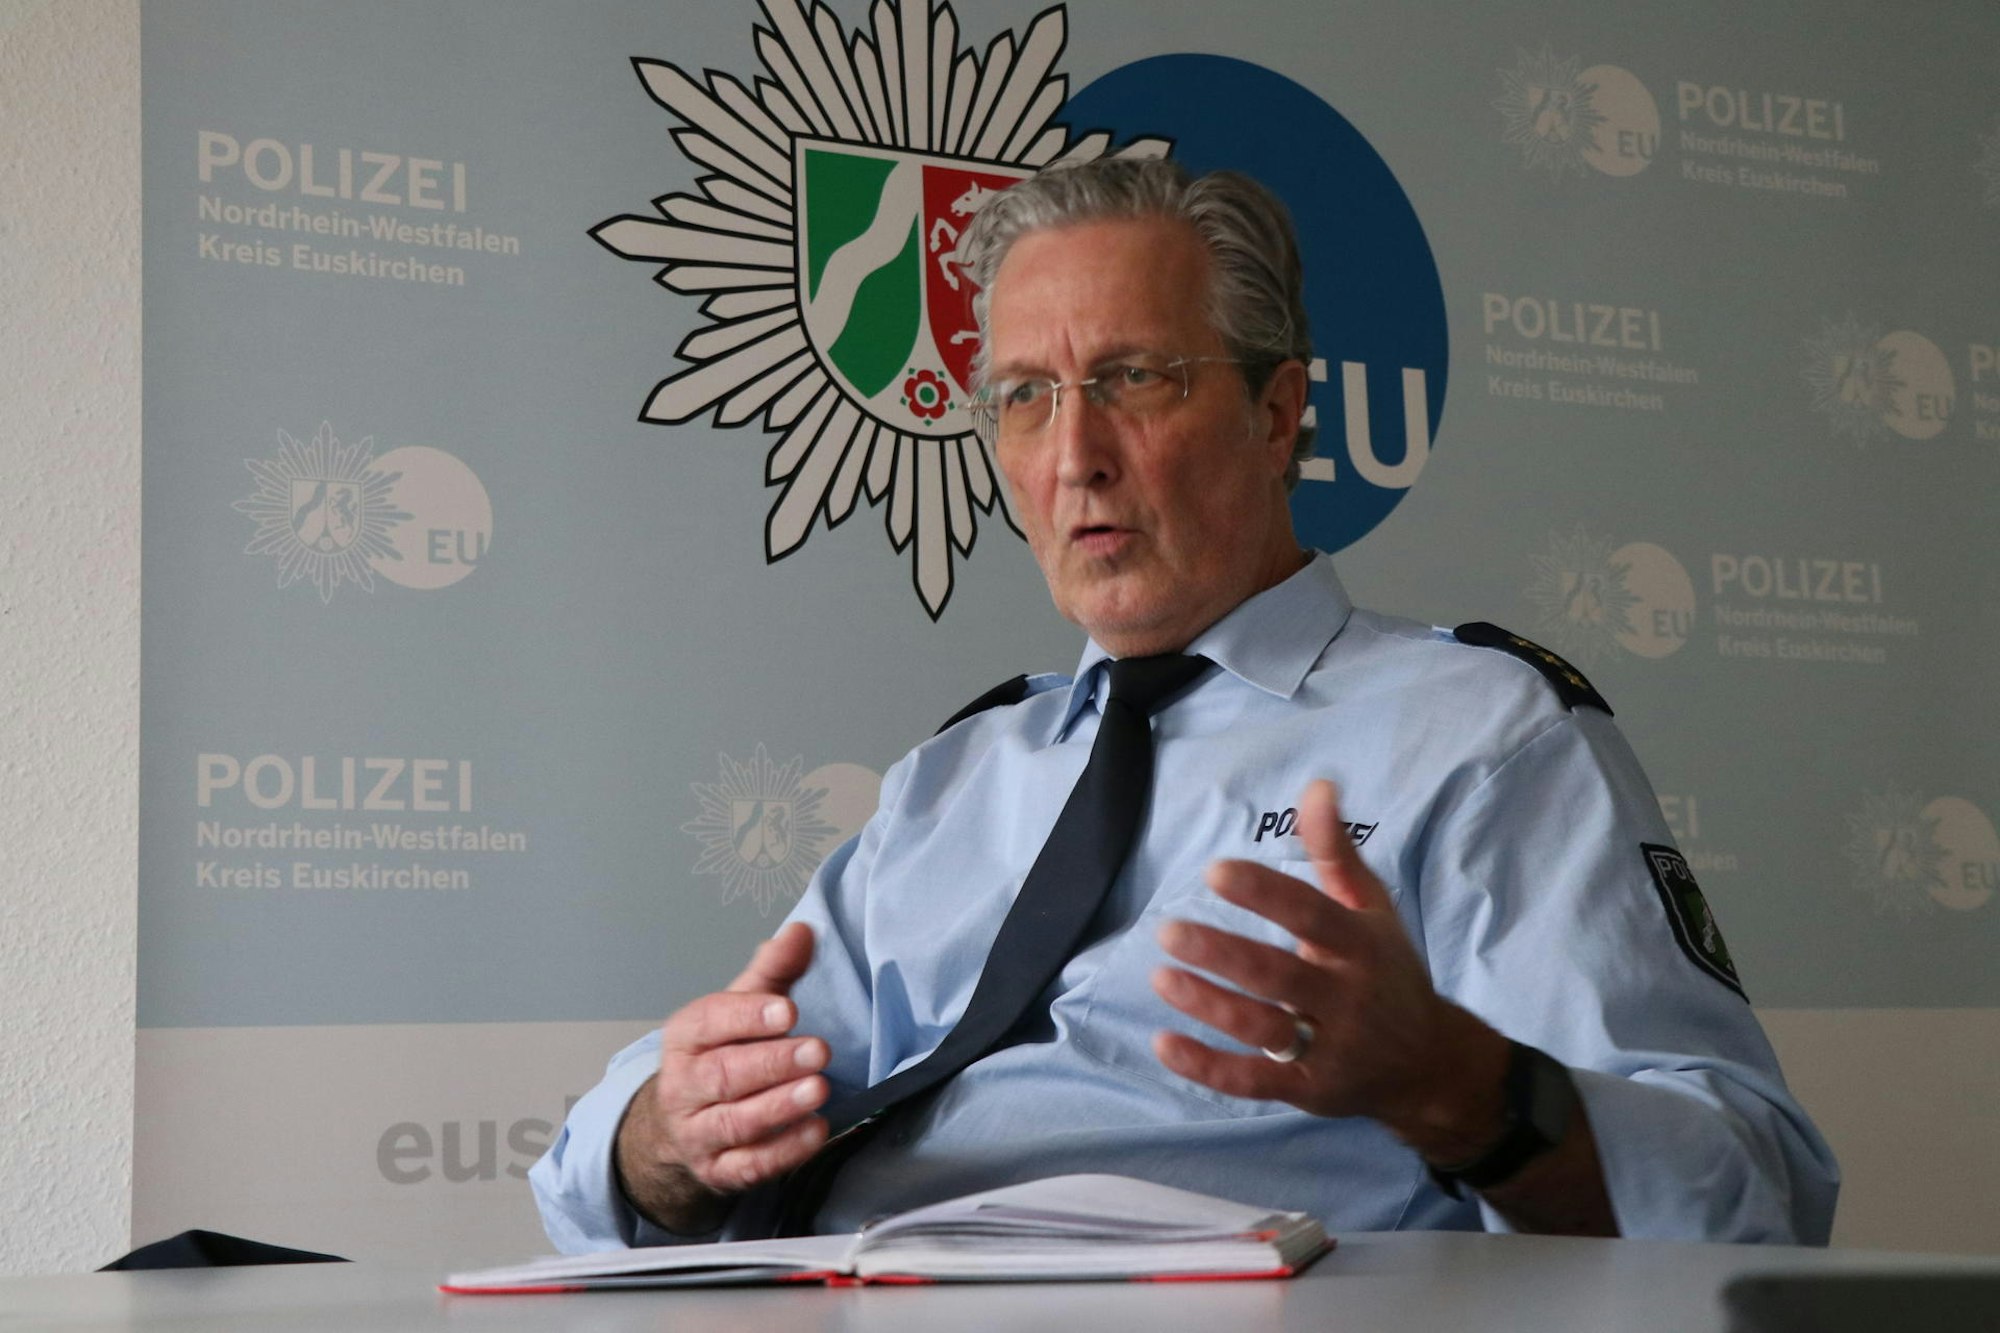 Euskirchens Polizeidirektor Harald Mertens im Videointerview.